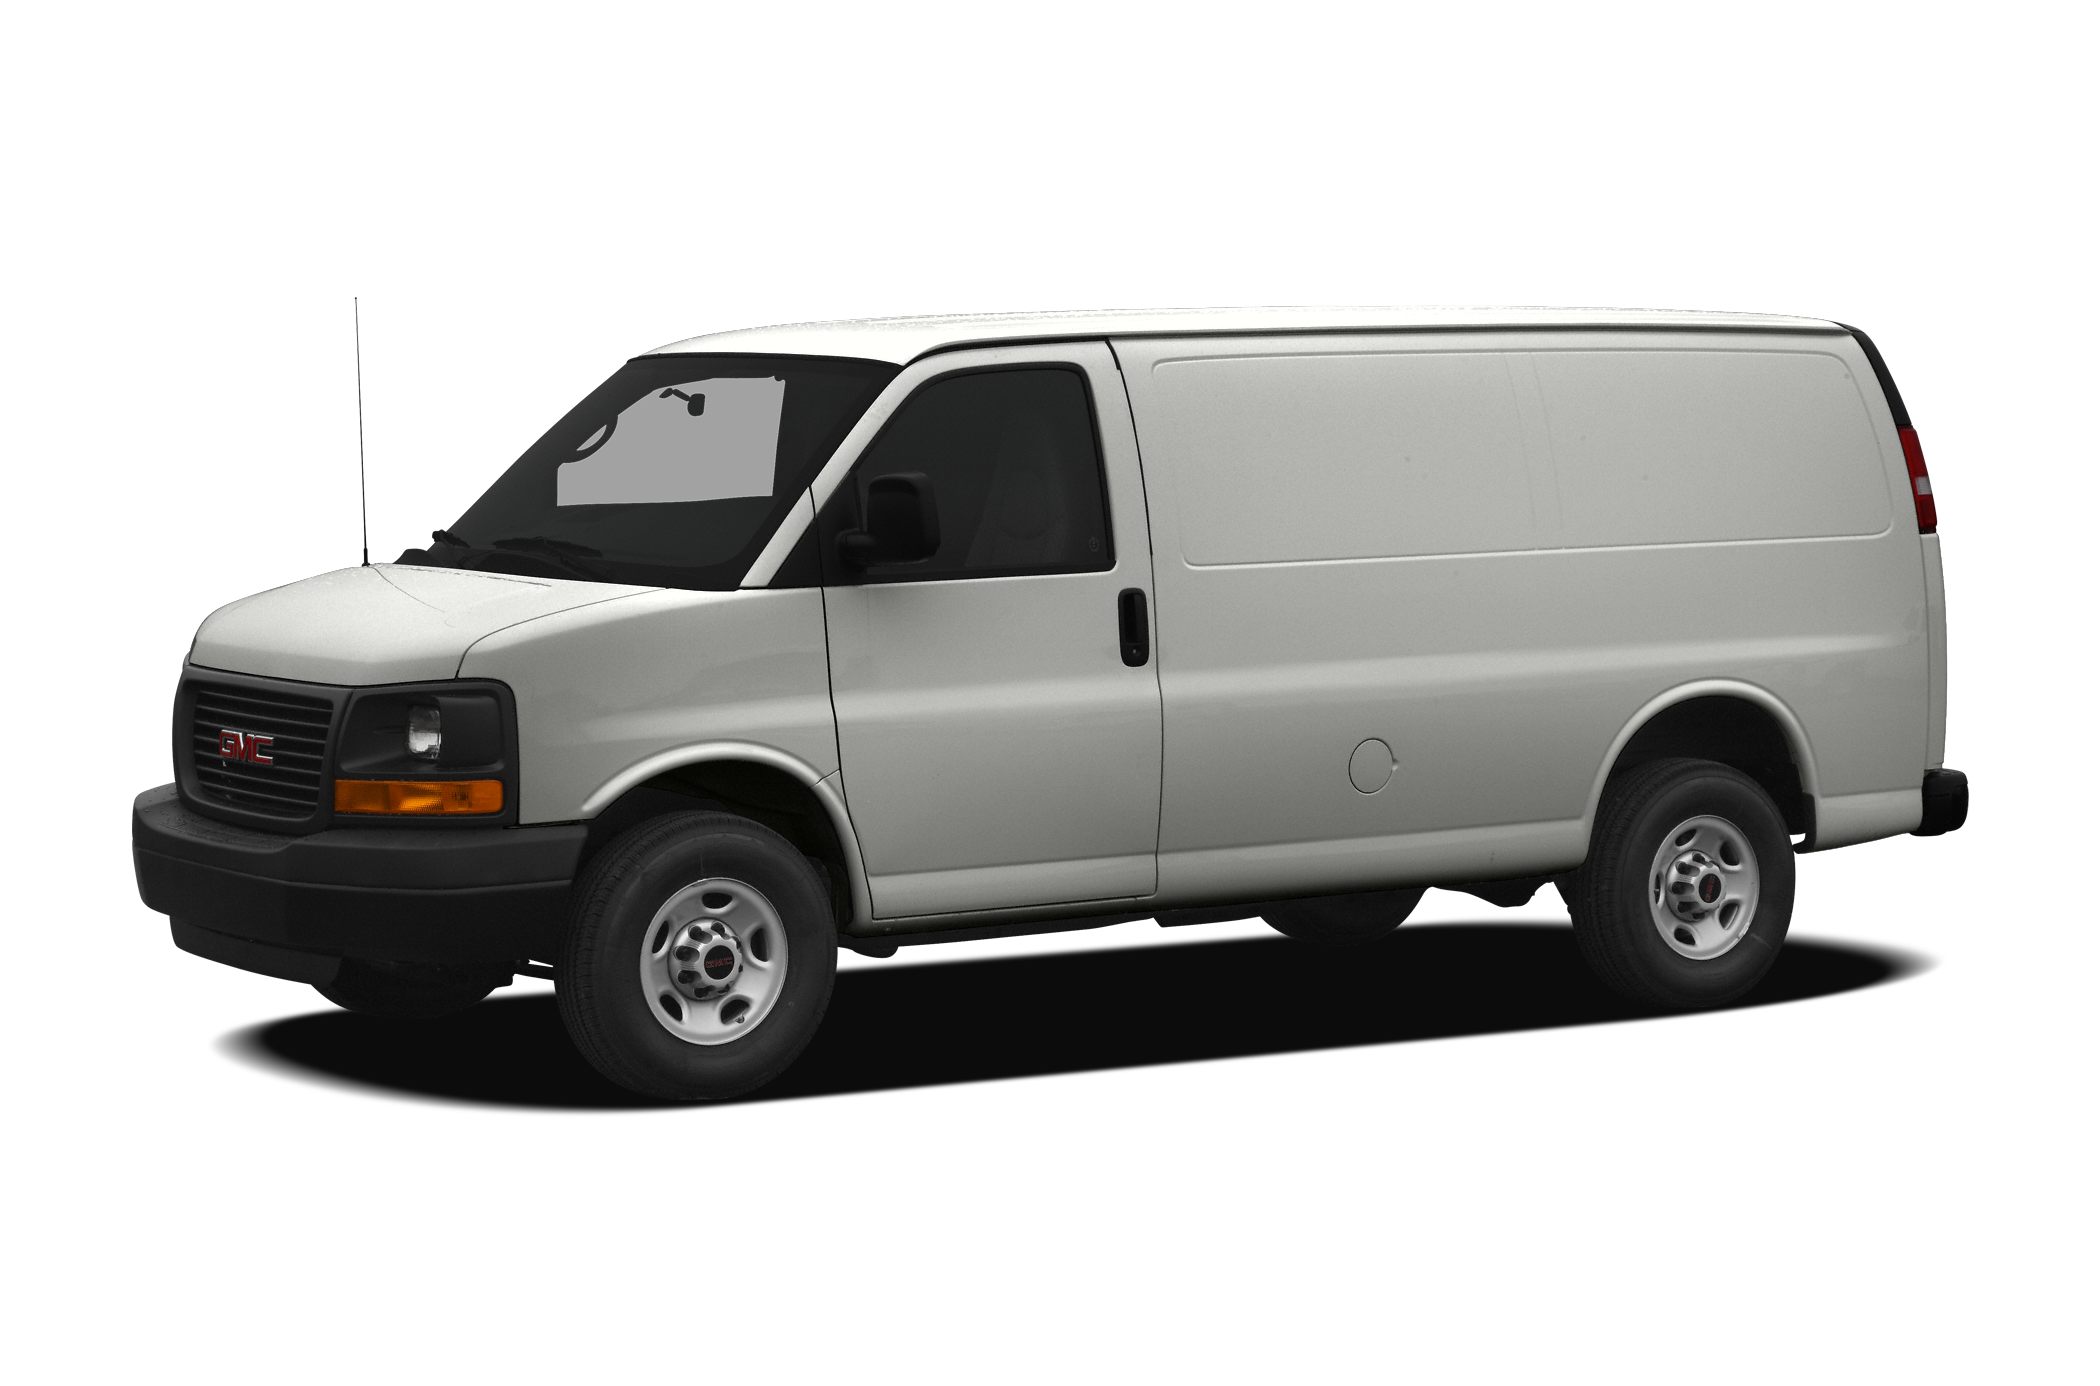 All-wheel Drive G1500 Cargo Van Specs 